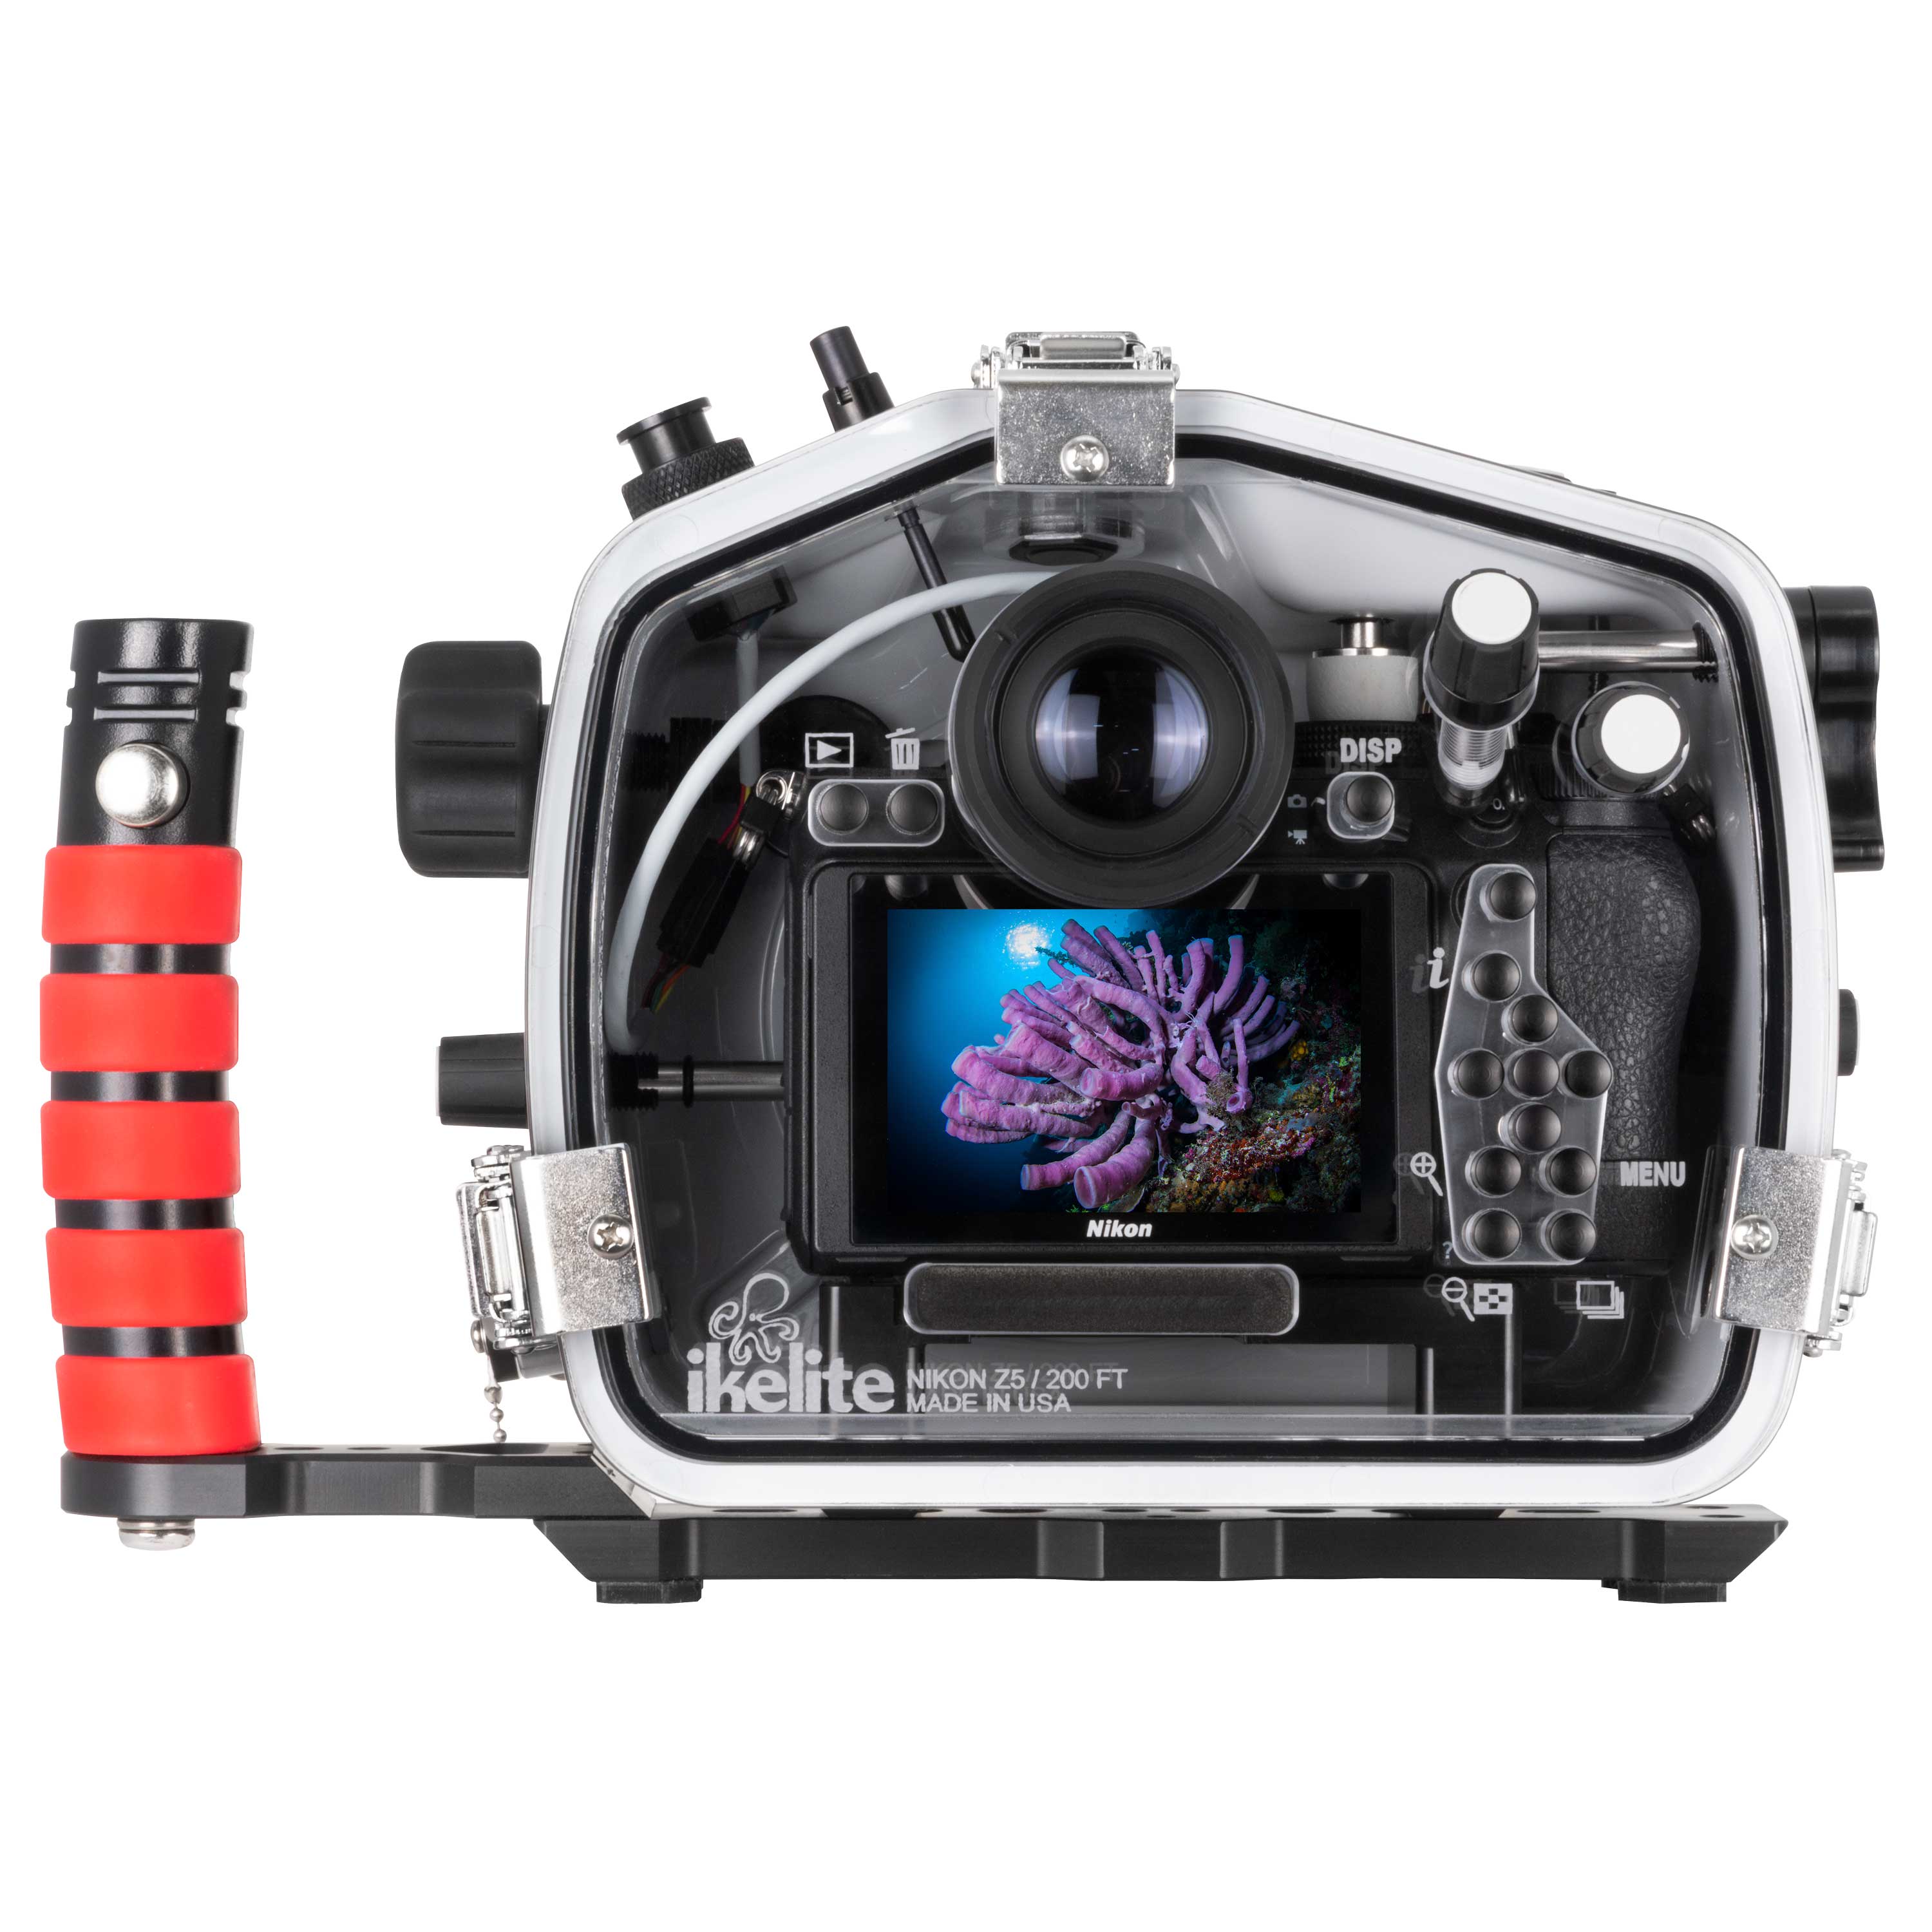 200DL Underwater Housing for Nikon Z5 Mirrorless Digital Cameras